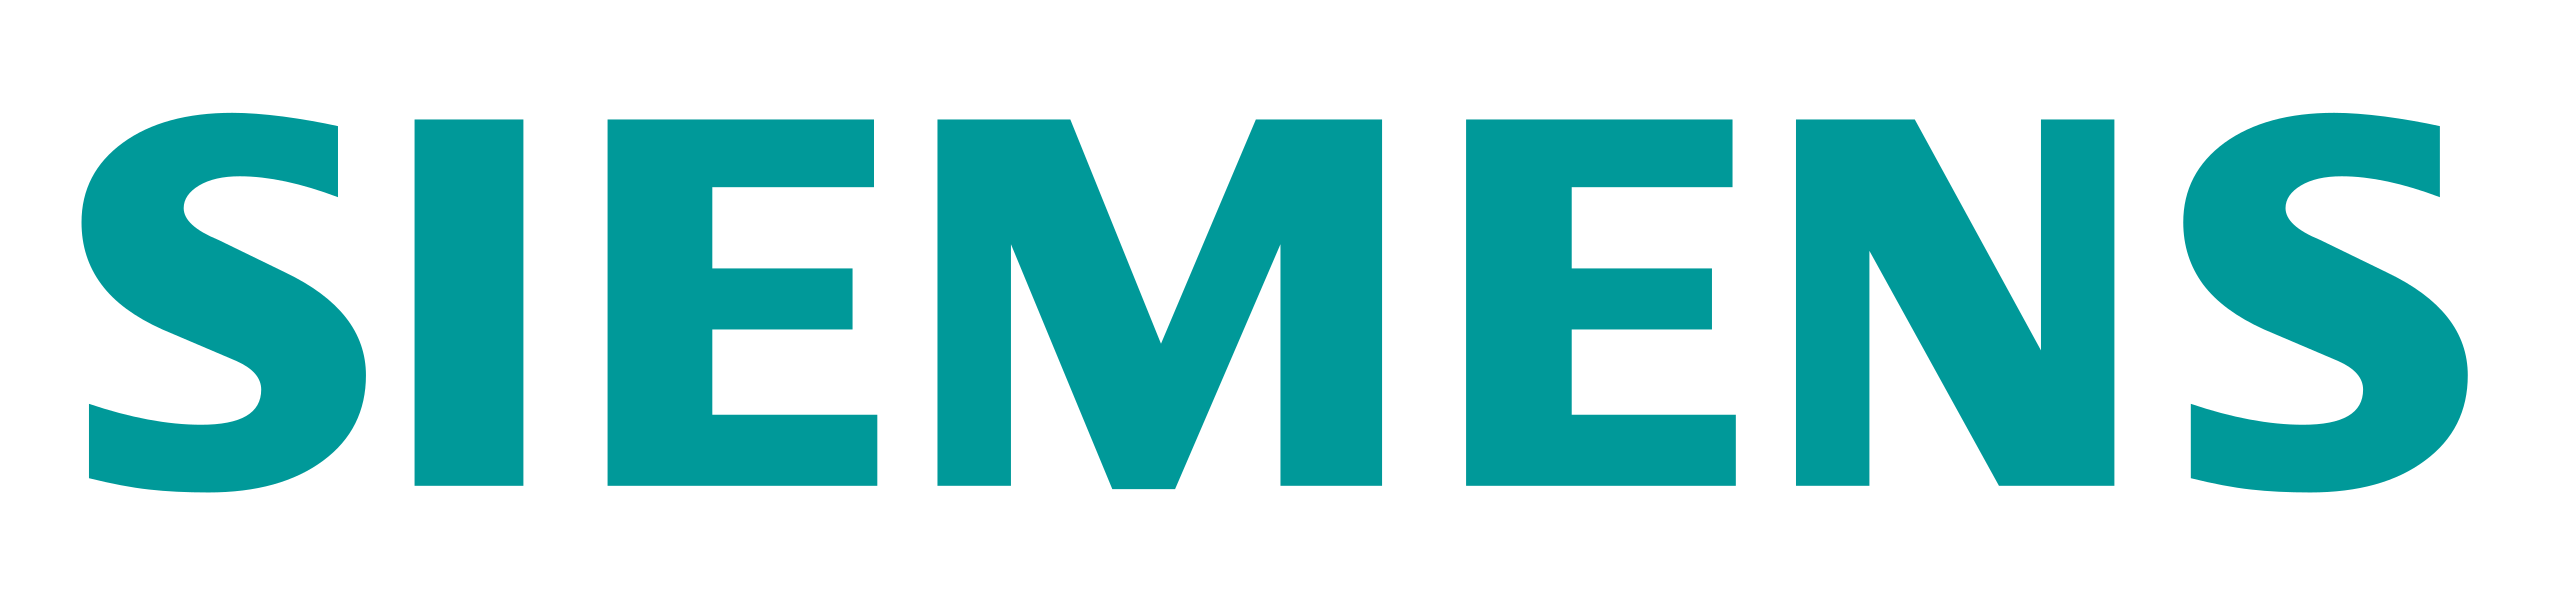 Siemens-logo.svg.png